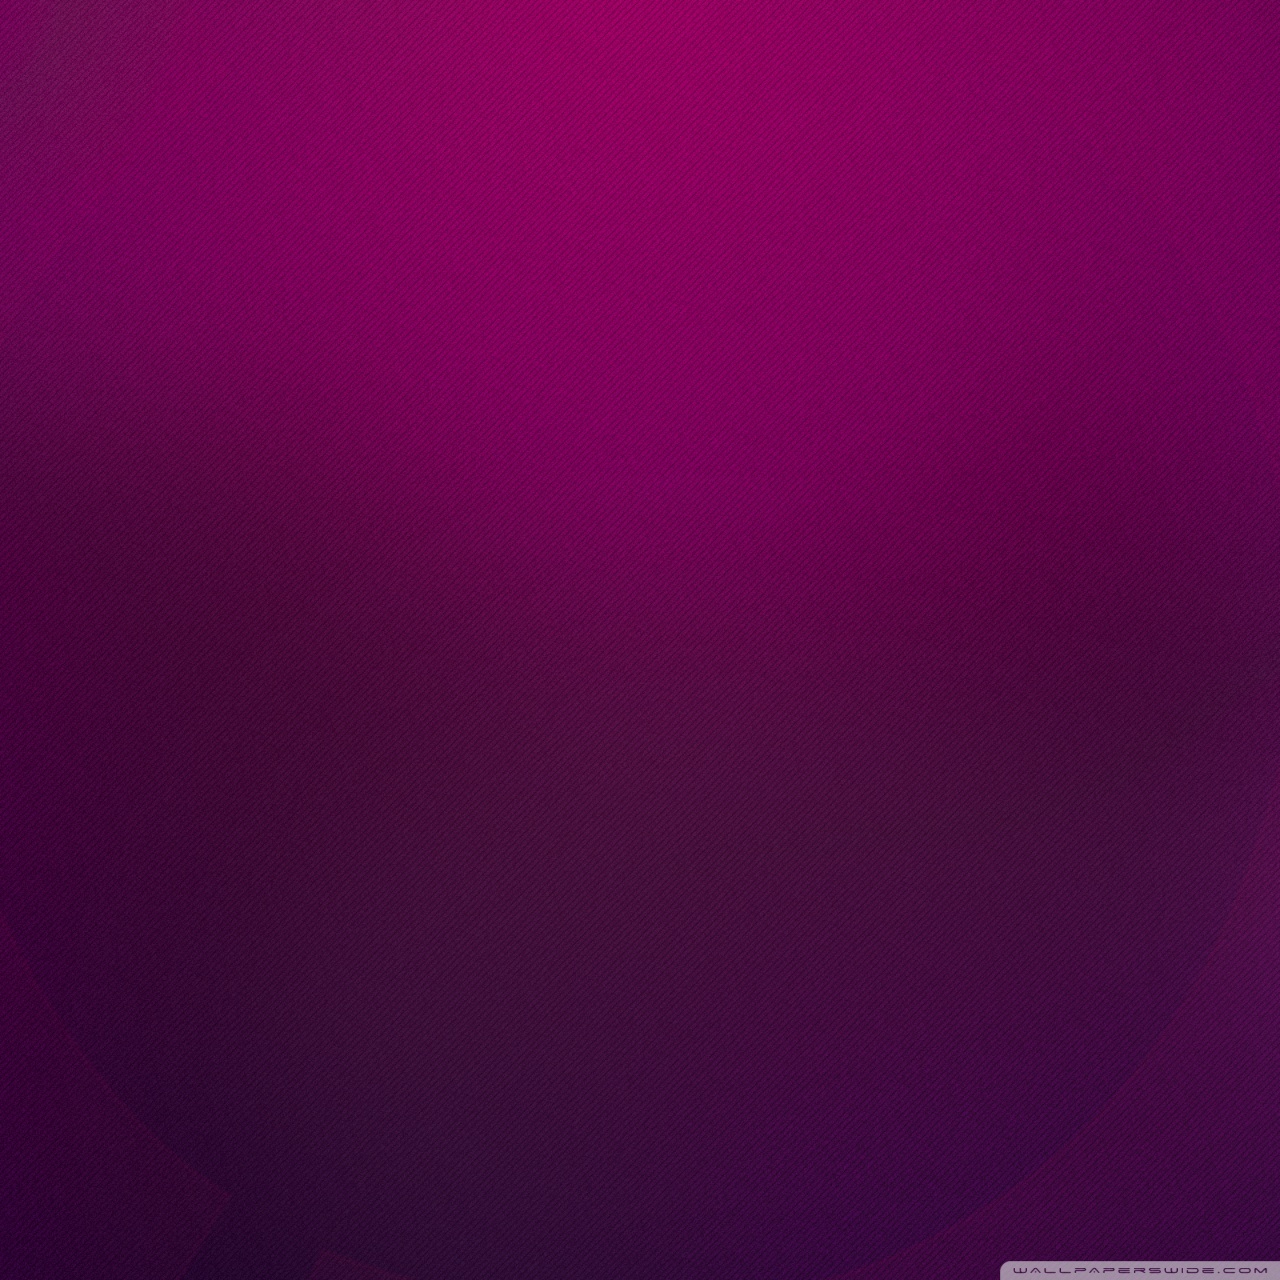 fond d'écran ordinaire pour android,violet,violet,rouge,rose,lilas